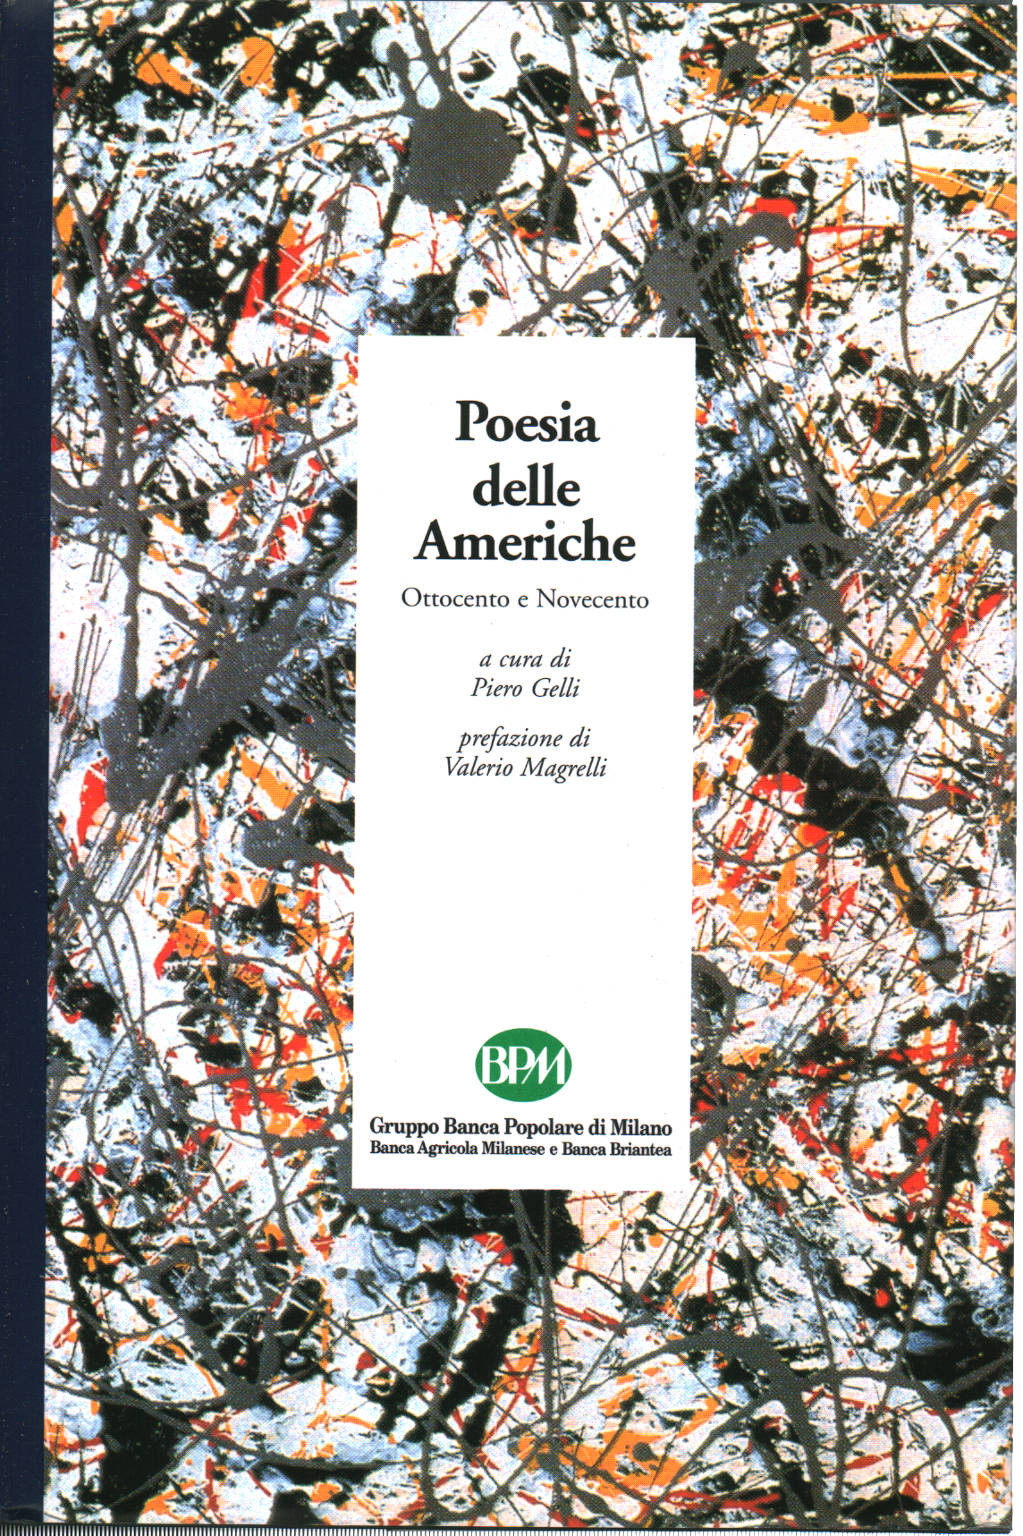 Poesia delle Americhe, Piero Gelli